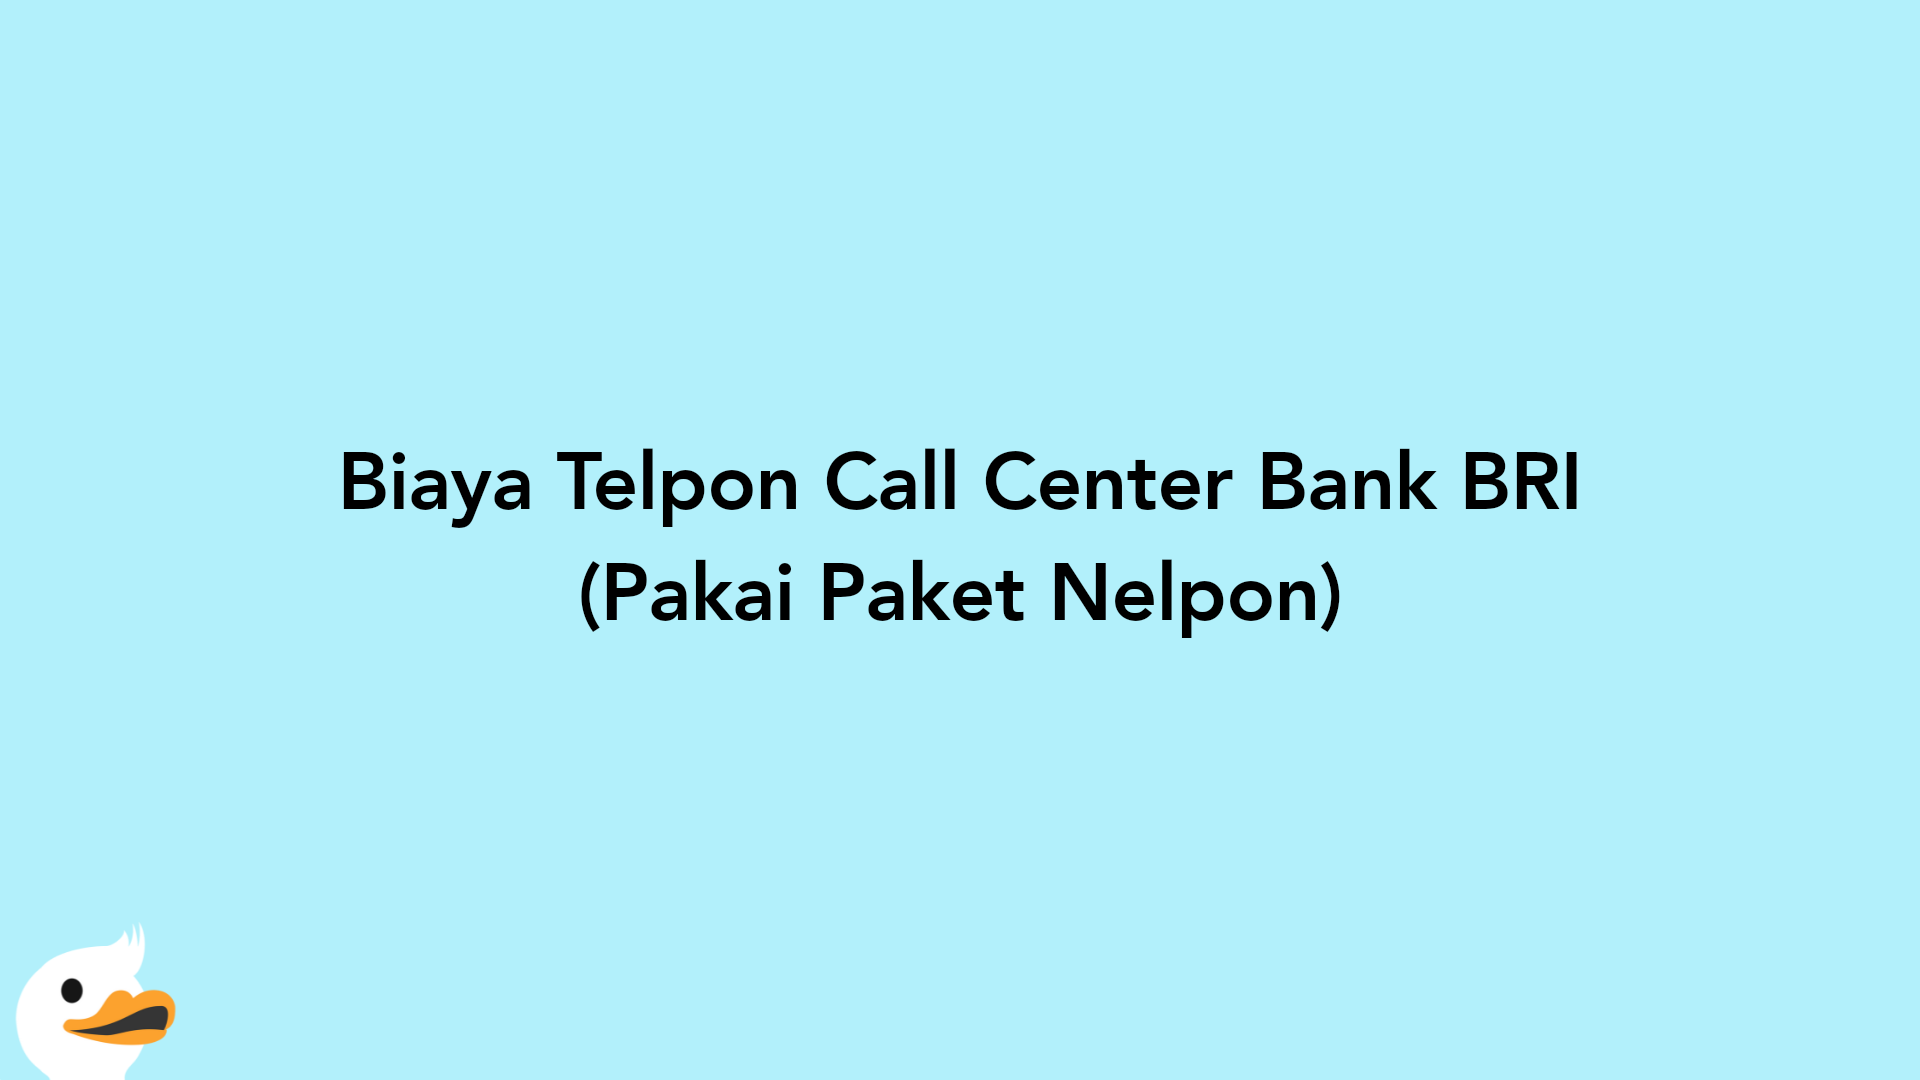 Biaya Telpon Call Center Bank BRI (Pakai Paket Nelpon)